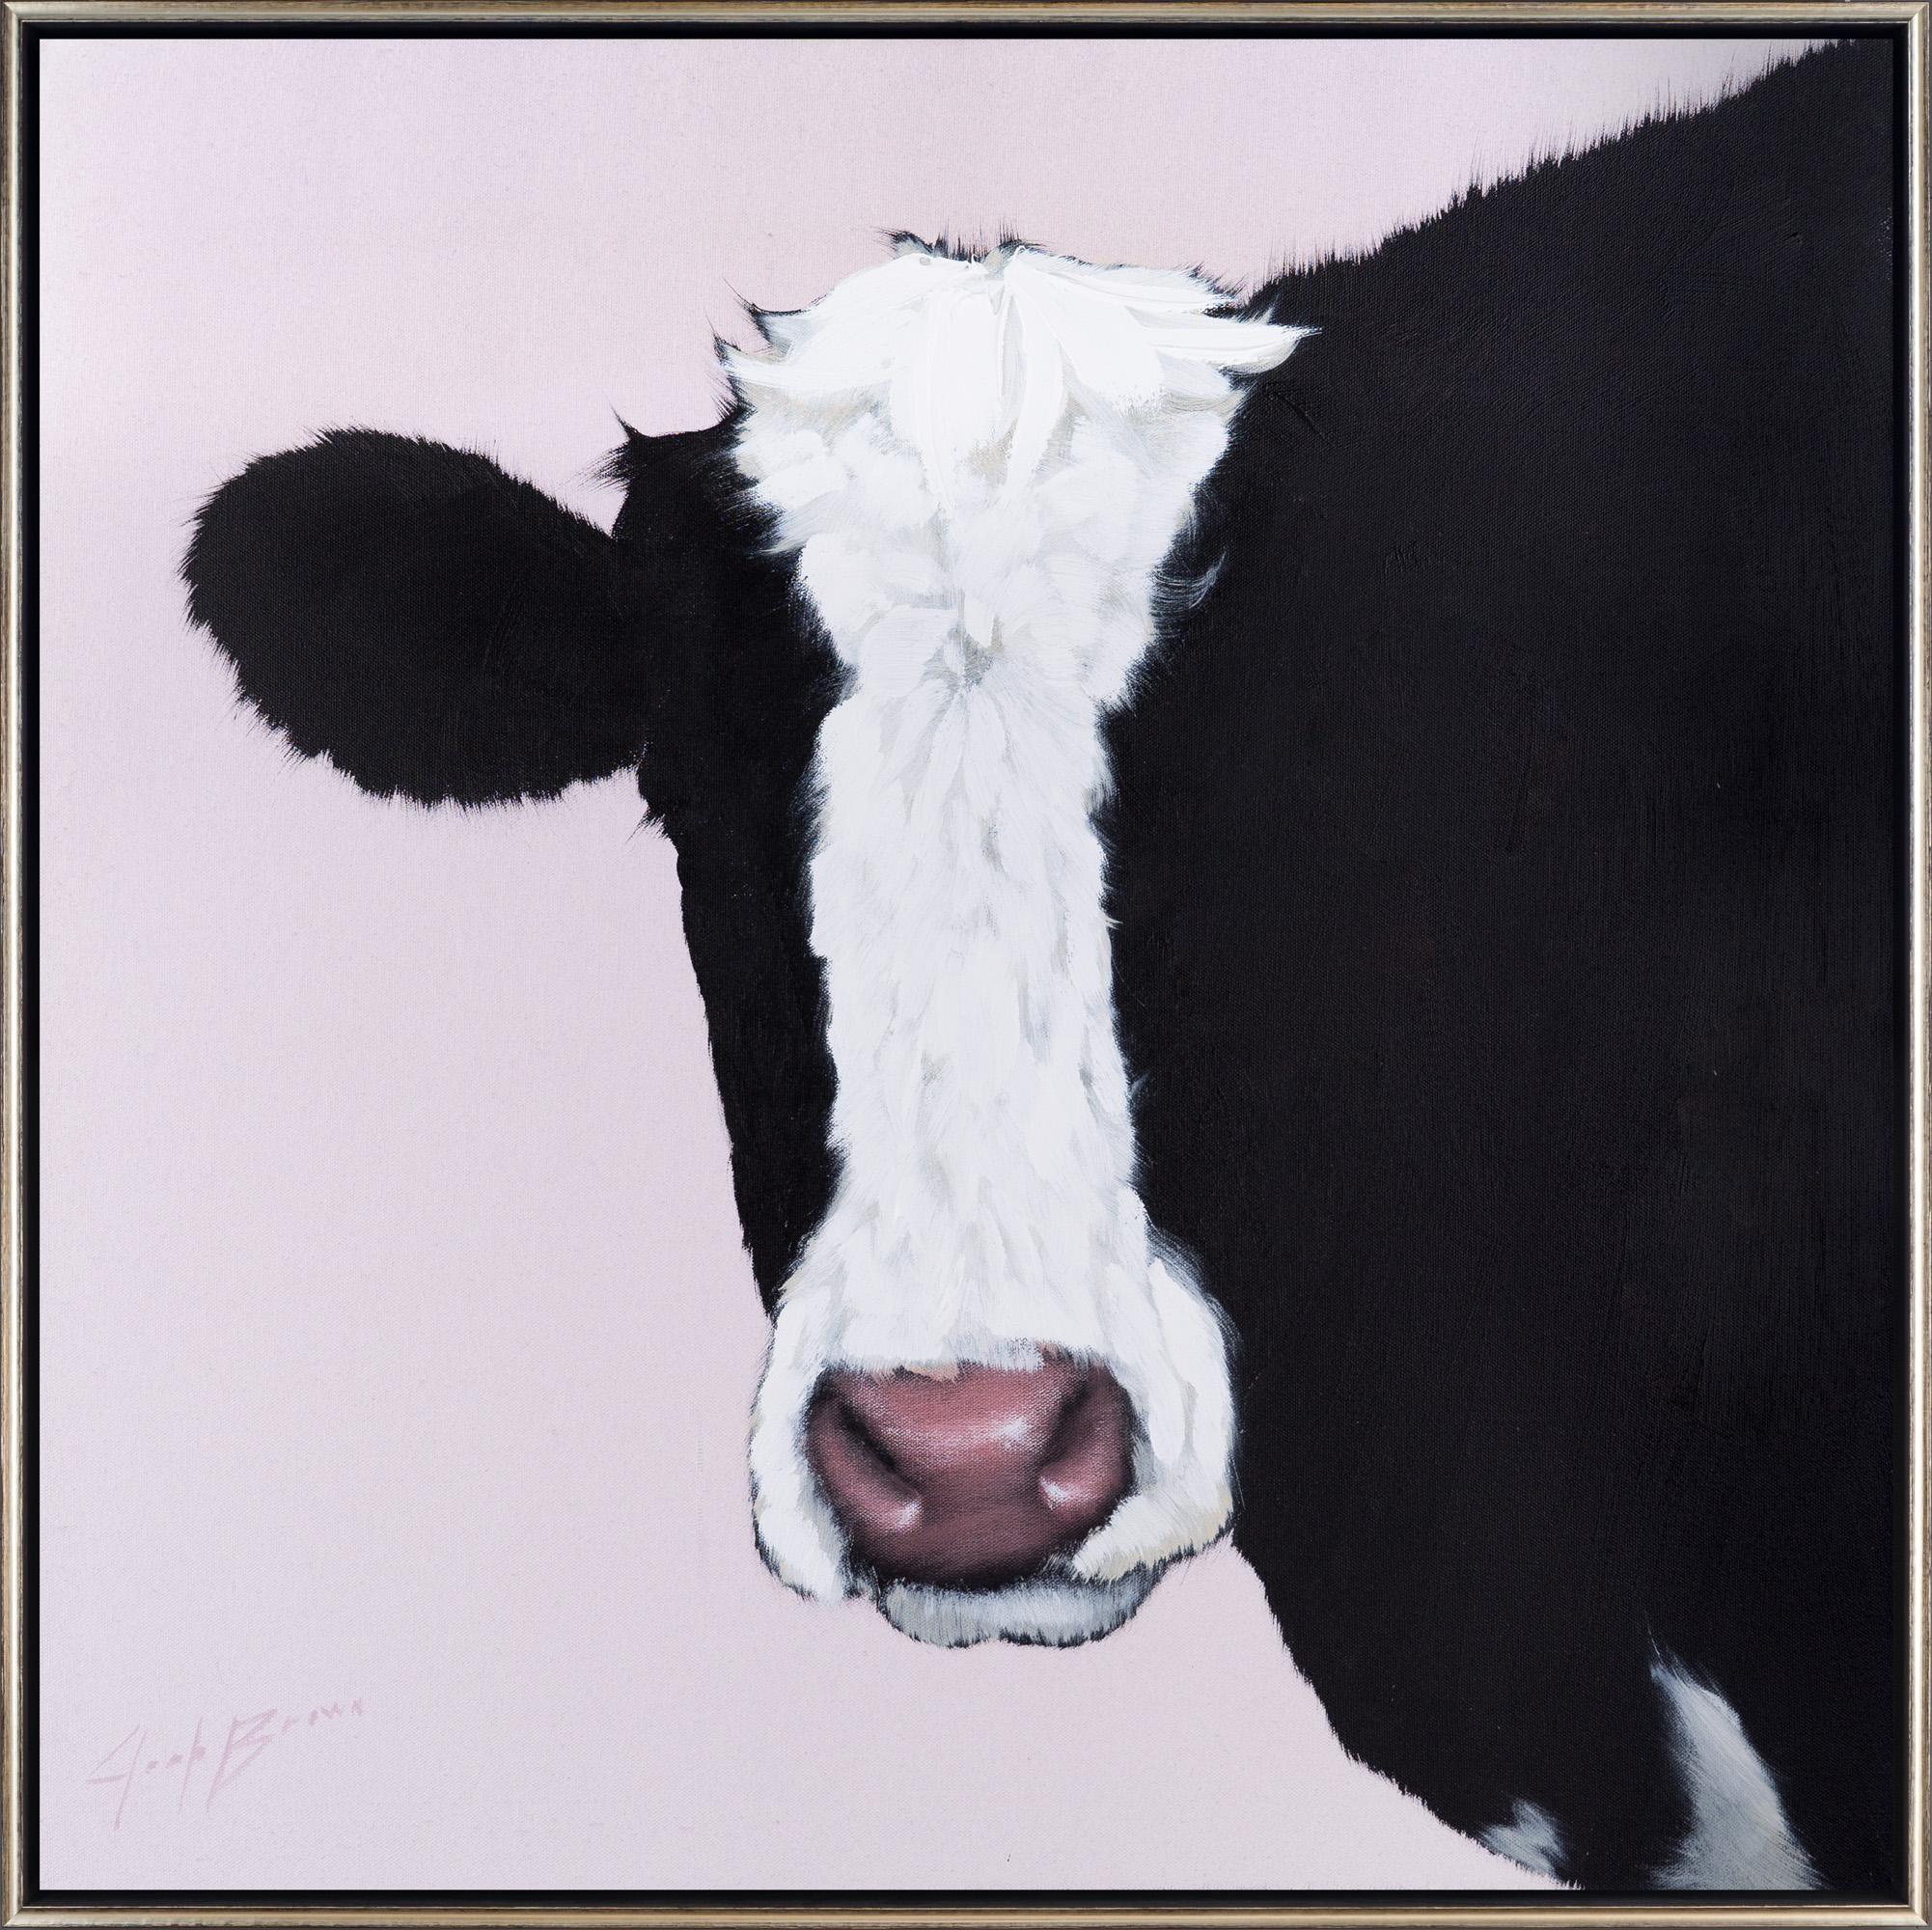 Joshua Brown Animal Painting – "Kuh 2" Zeitgenössisches Tierportrait Öl und Acryl auf Leinwand Gerahmtes Gemälde